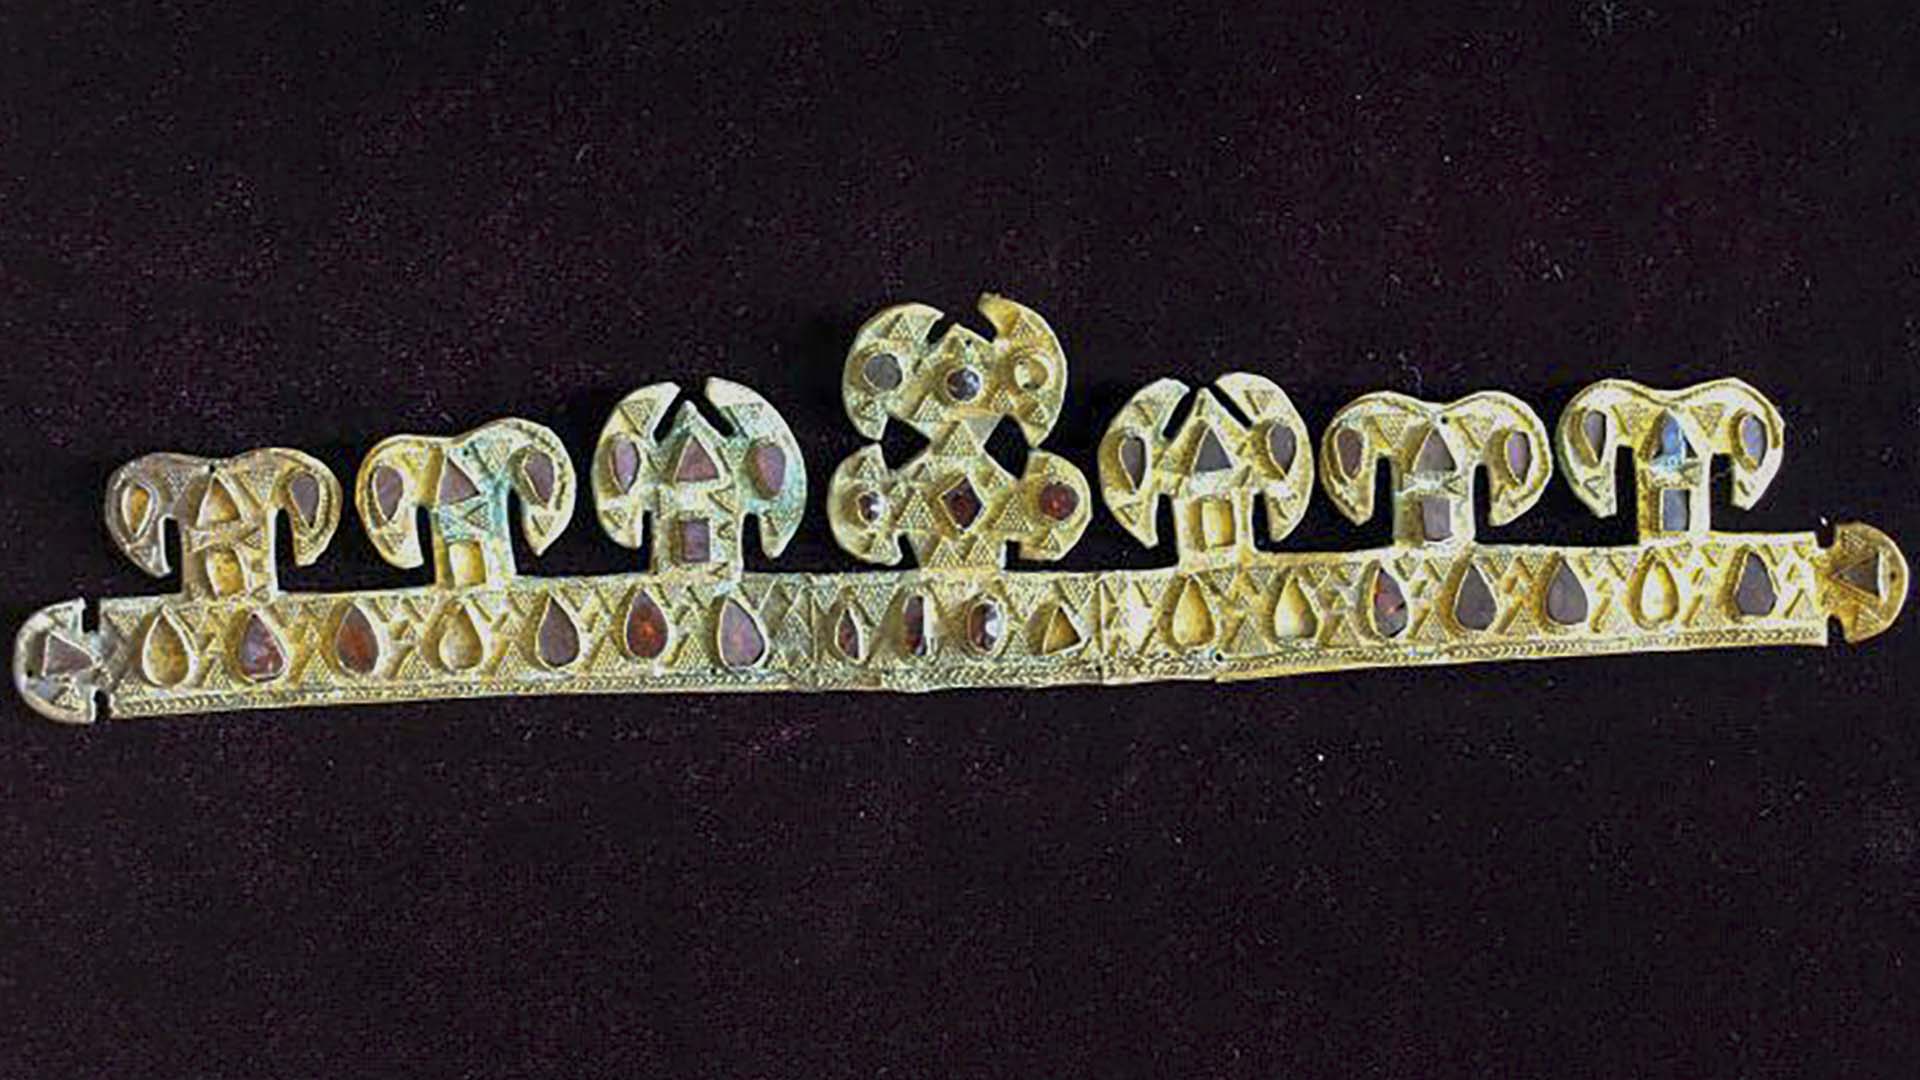 Le diadème en or vieux de 1 500 ans, incrusté de pierres précieuses, l'un des objets les plus précieux au monde datant du règne sanguinaire d'Attila le Hun, est exposé dans un musée de Melitopol, en Ukraine, en novembre 2020.